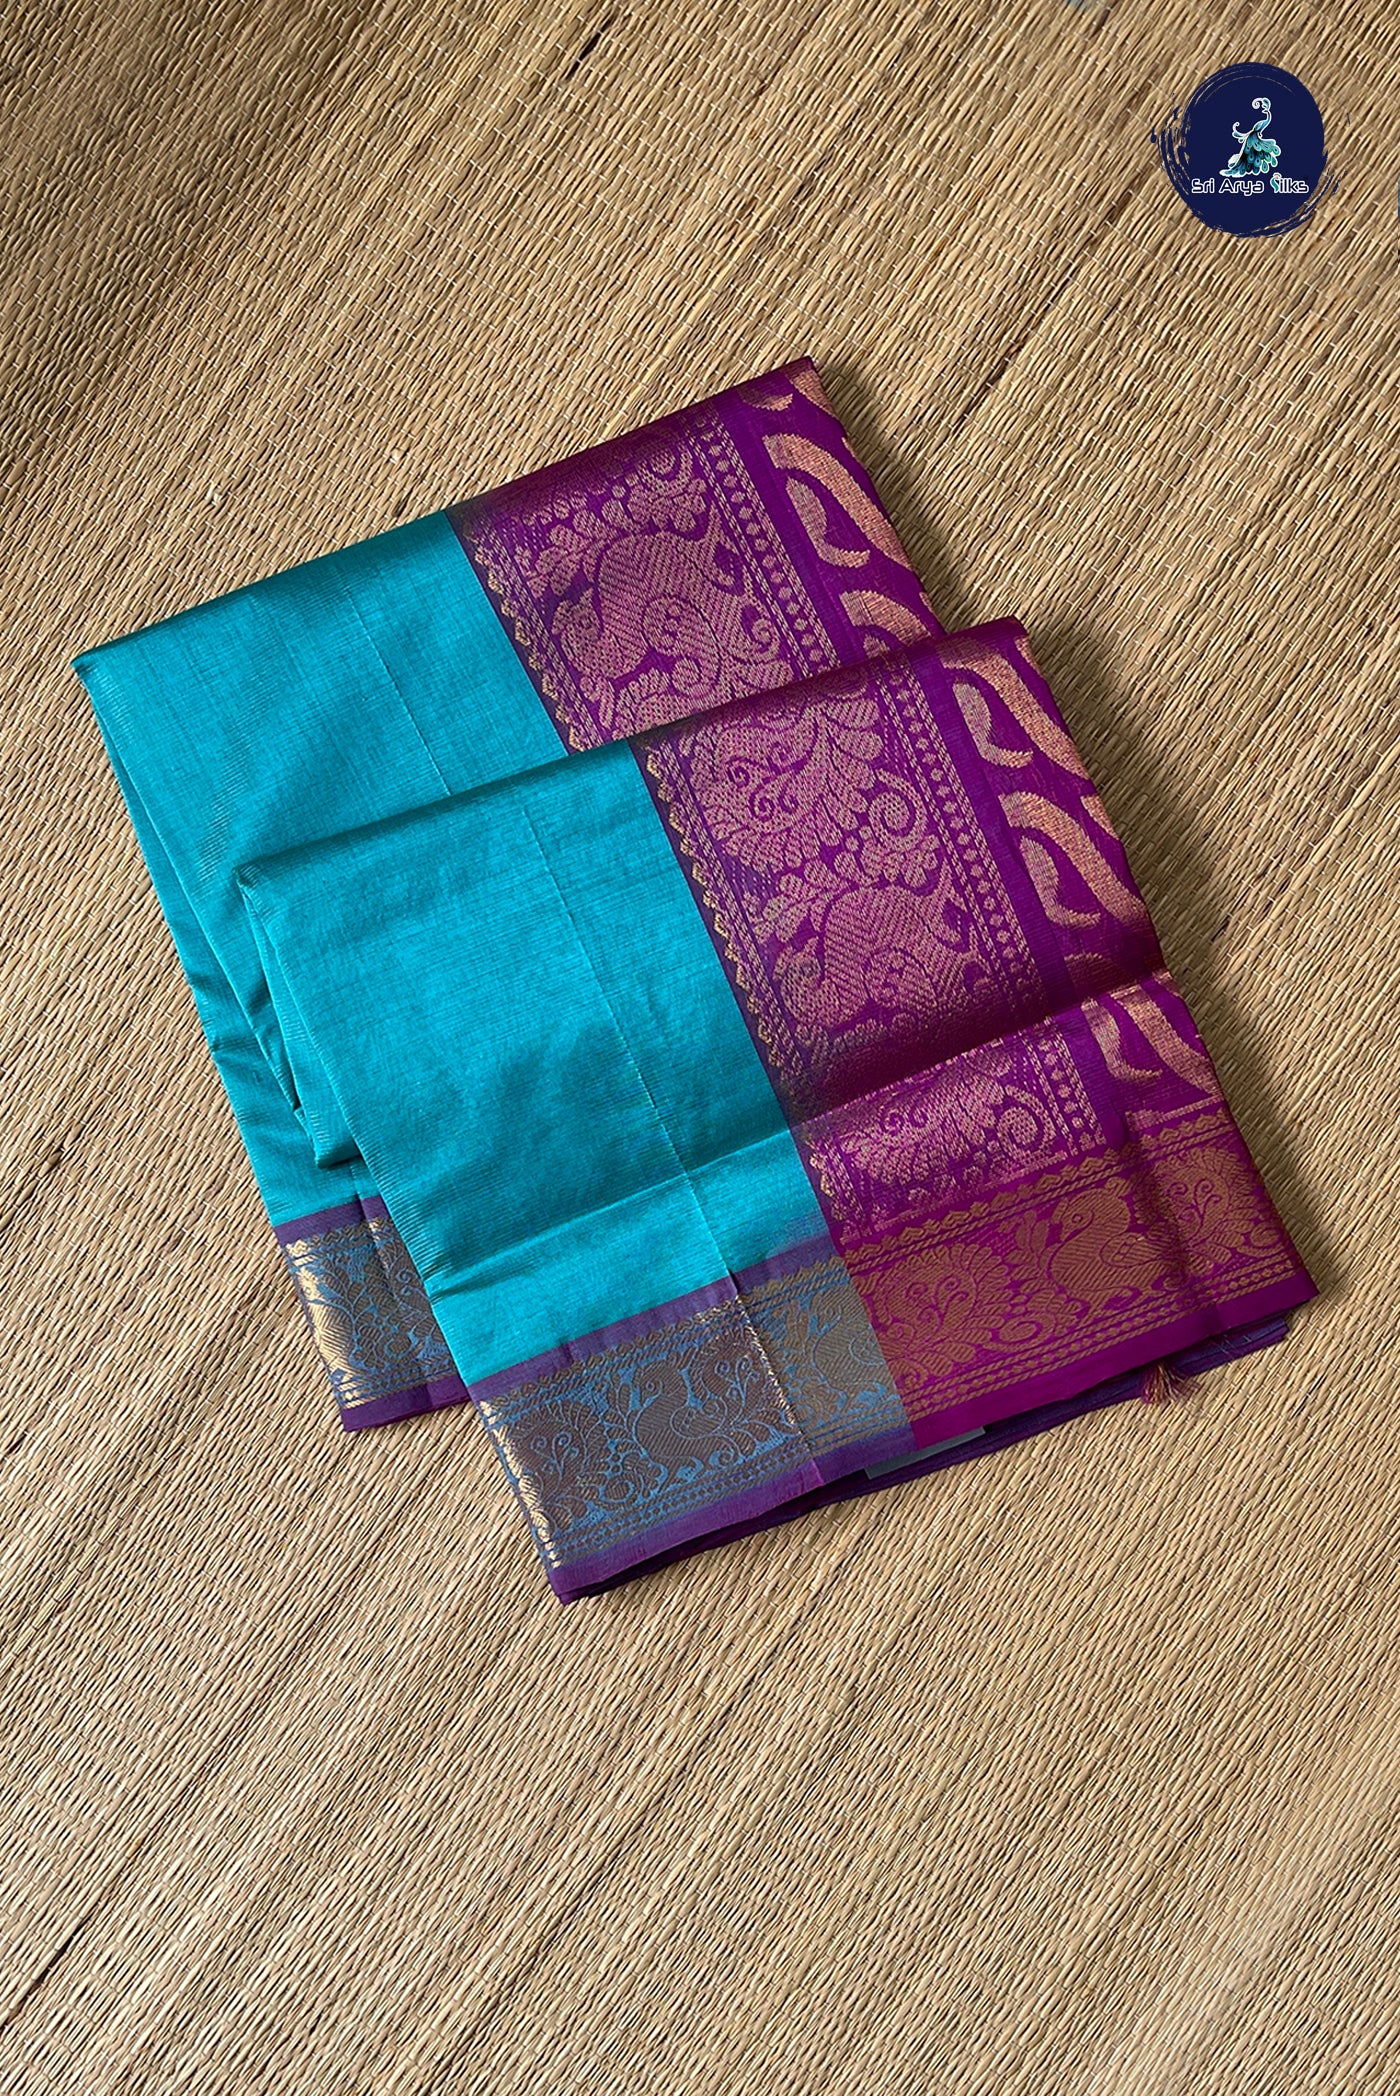 Sea Blue Vaira Oosi Silk Cotton Saree With Vaira Oosi Pattern